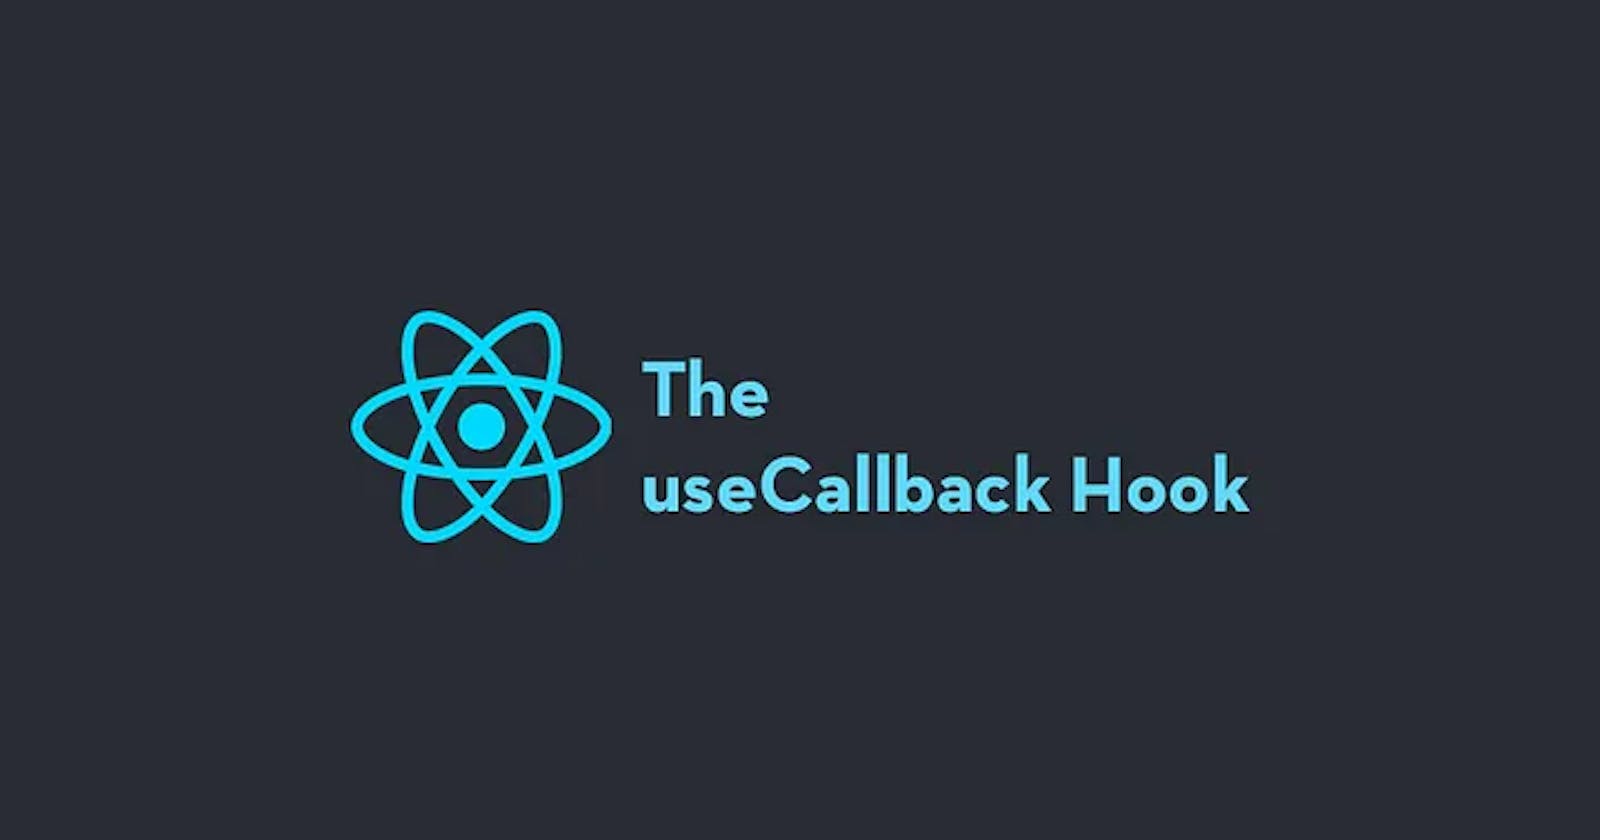 Why useCallback()?